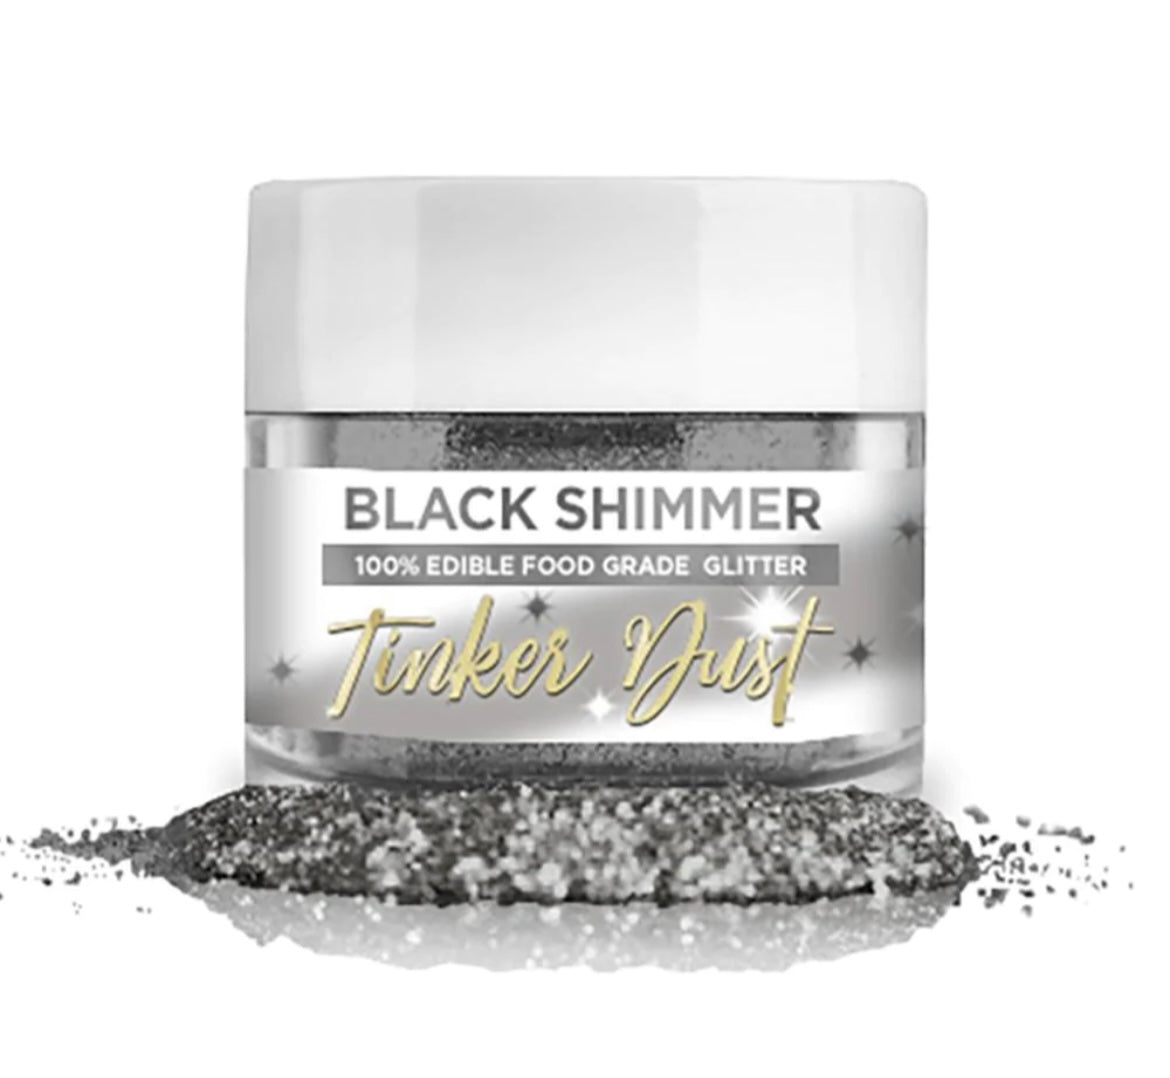 Luster Dust Bakell Tinker Dust Black Shimmer – Sugar Street Cakes